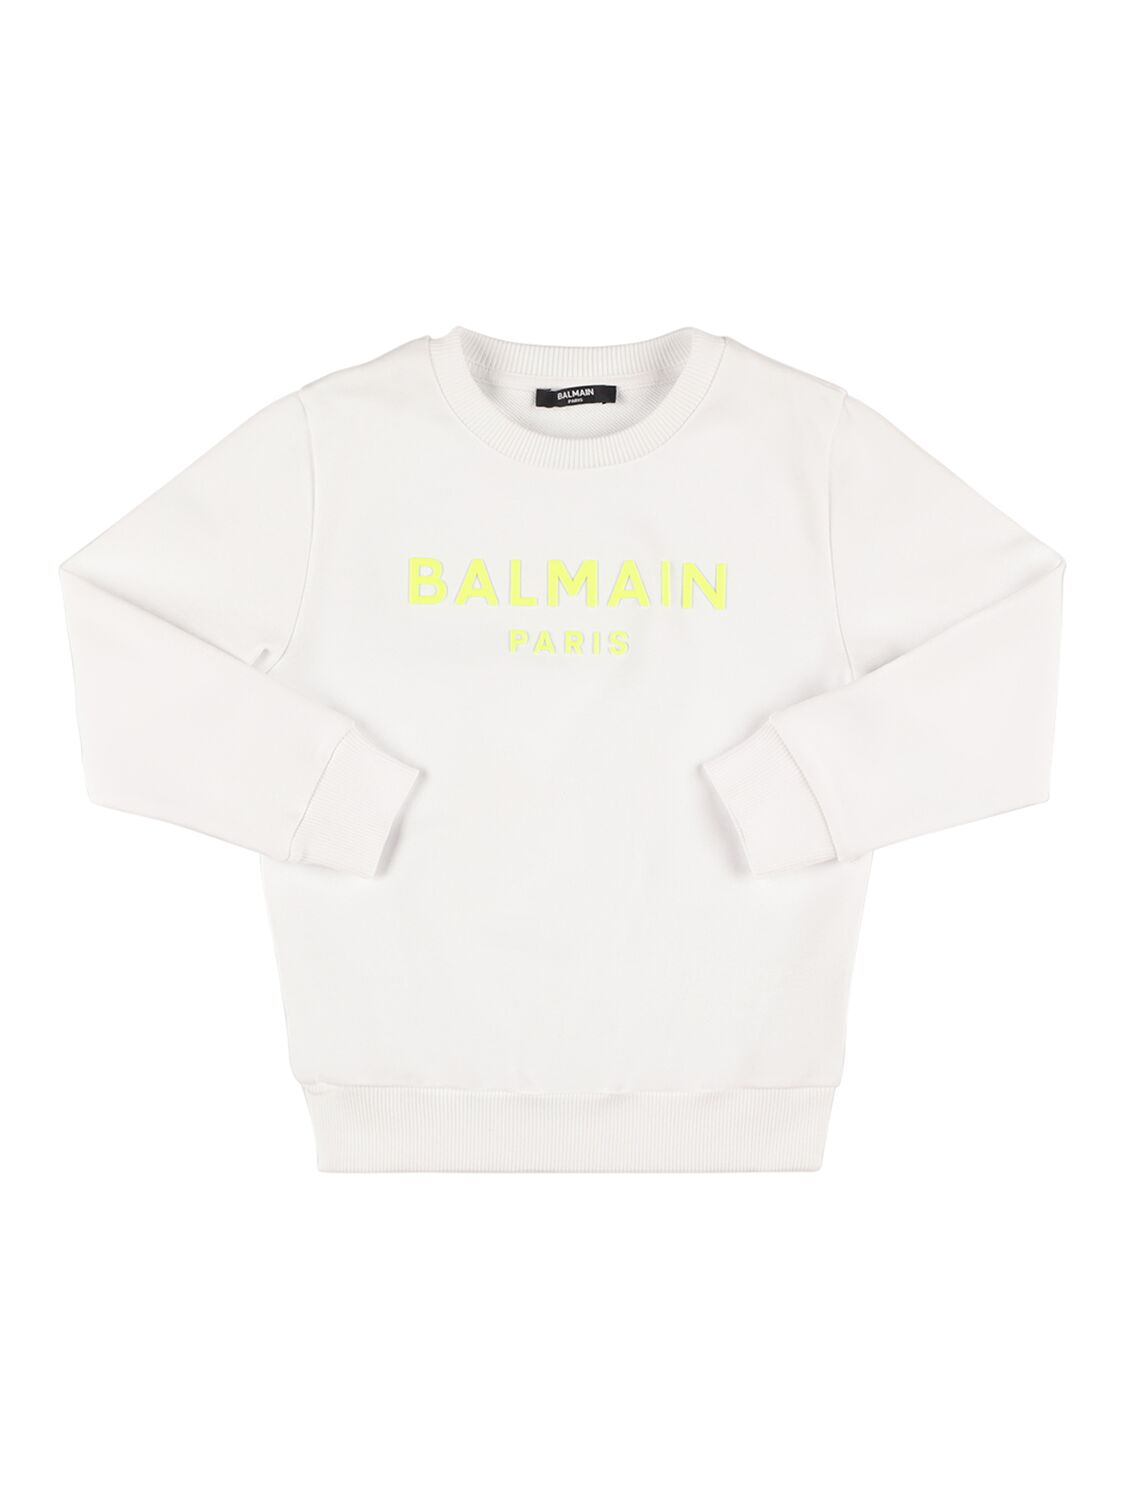 Balmain Kids' Organic Cotton Sweatshirt In White,yellow